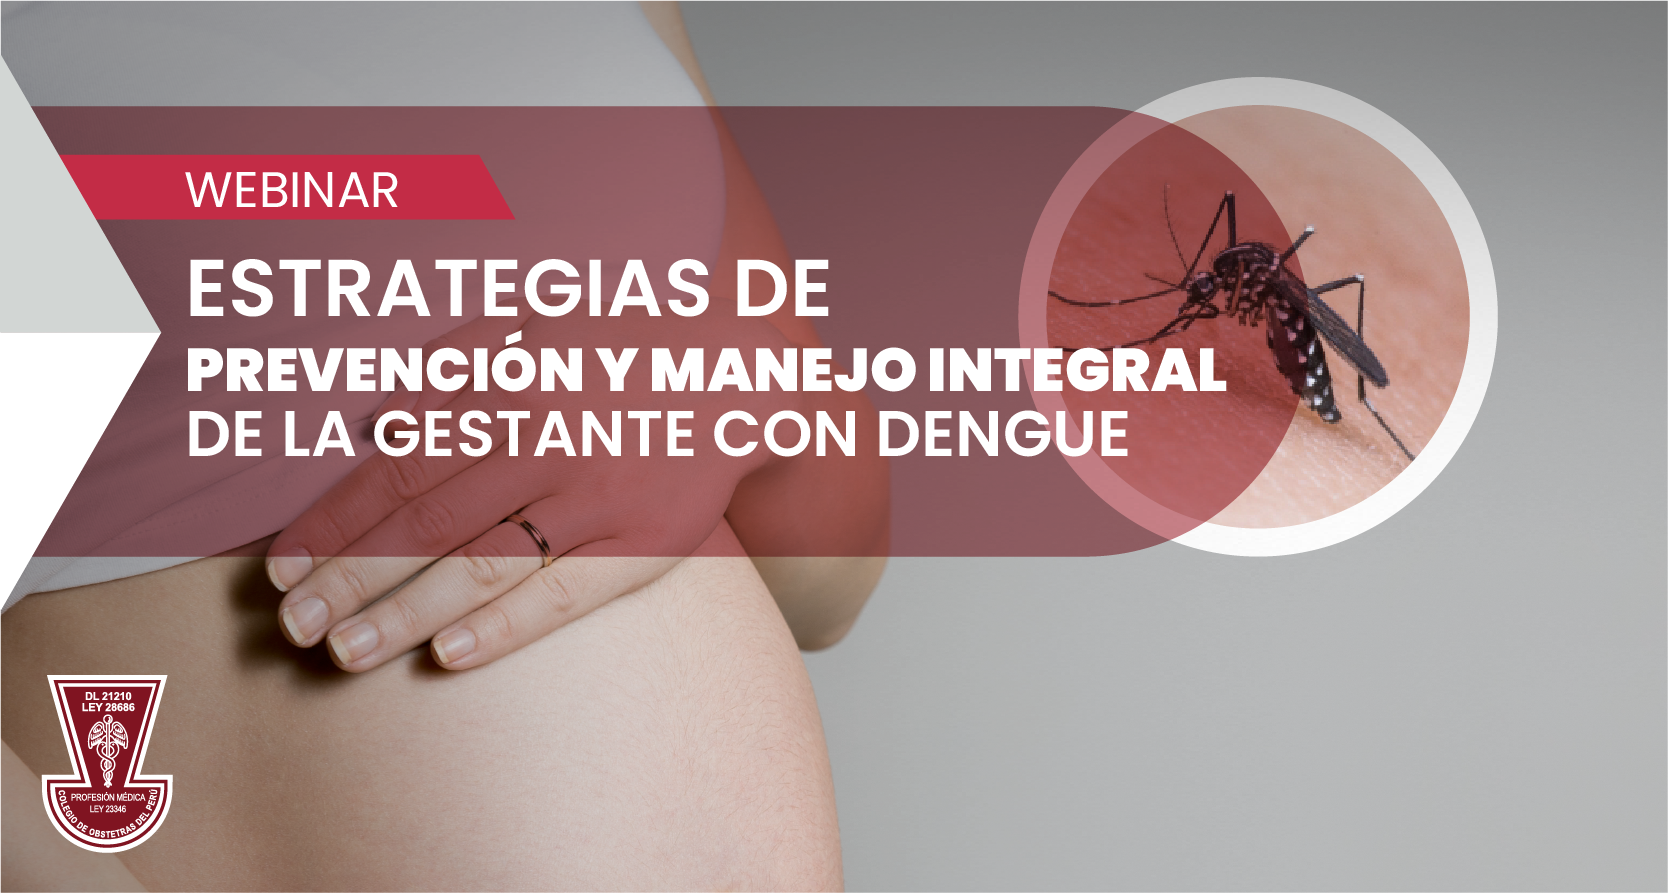 WEBINAR “Estrategias de Prevención y Manejo Integral de la Gestante con Dengue”